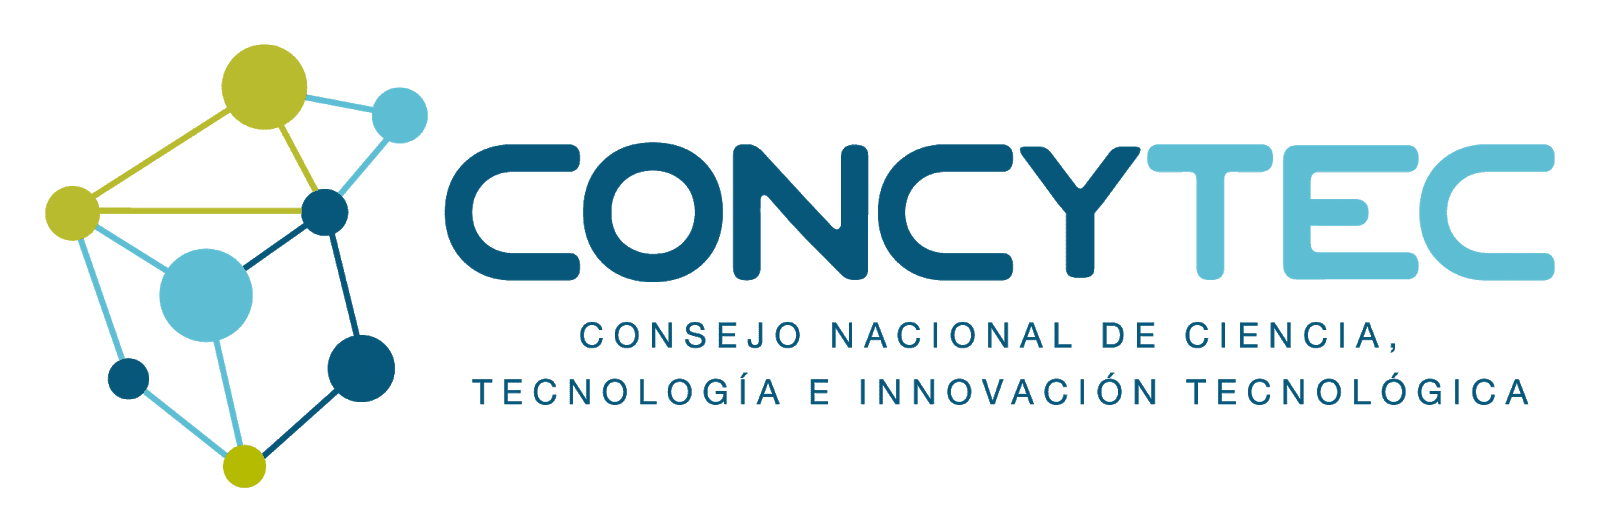 CV- Concytec